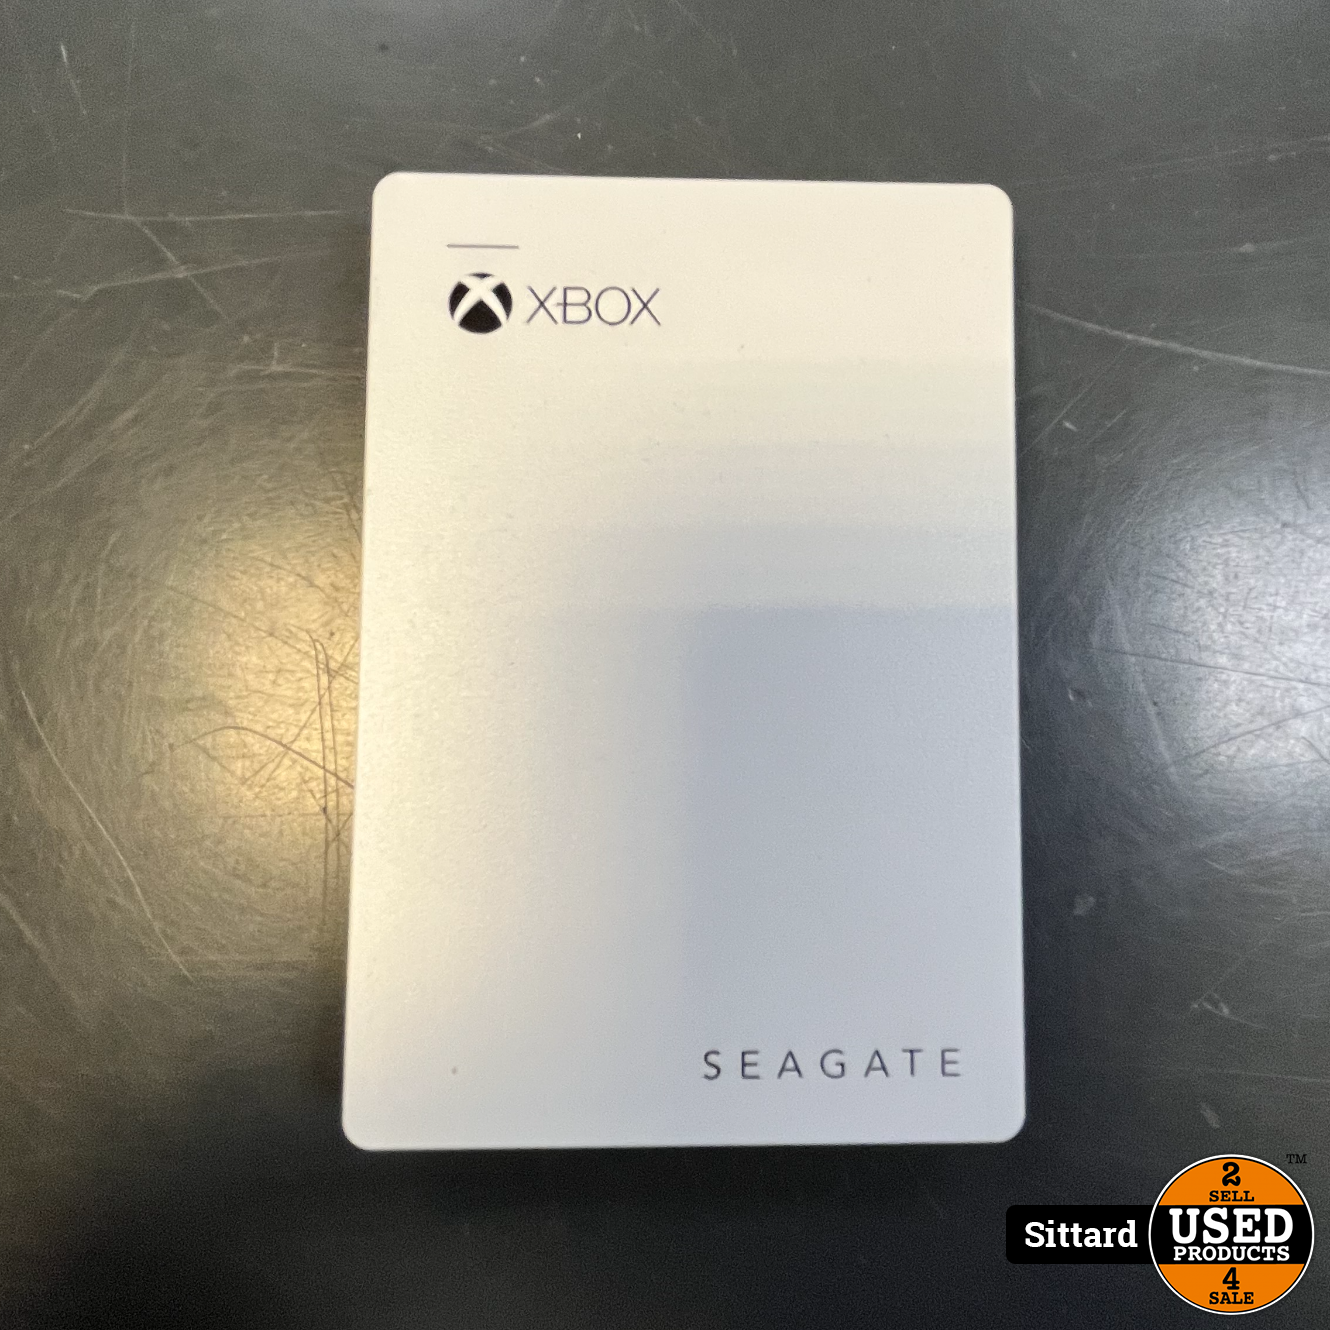 Supermarkt Aandringen Uitscheiden Xbox - Seagate Externe harde schijf, 2TB, In nette staat - Used Products  Sittard